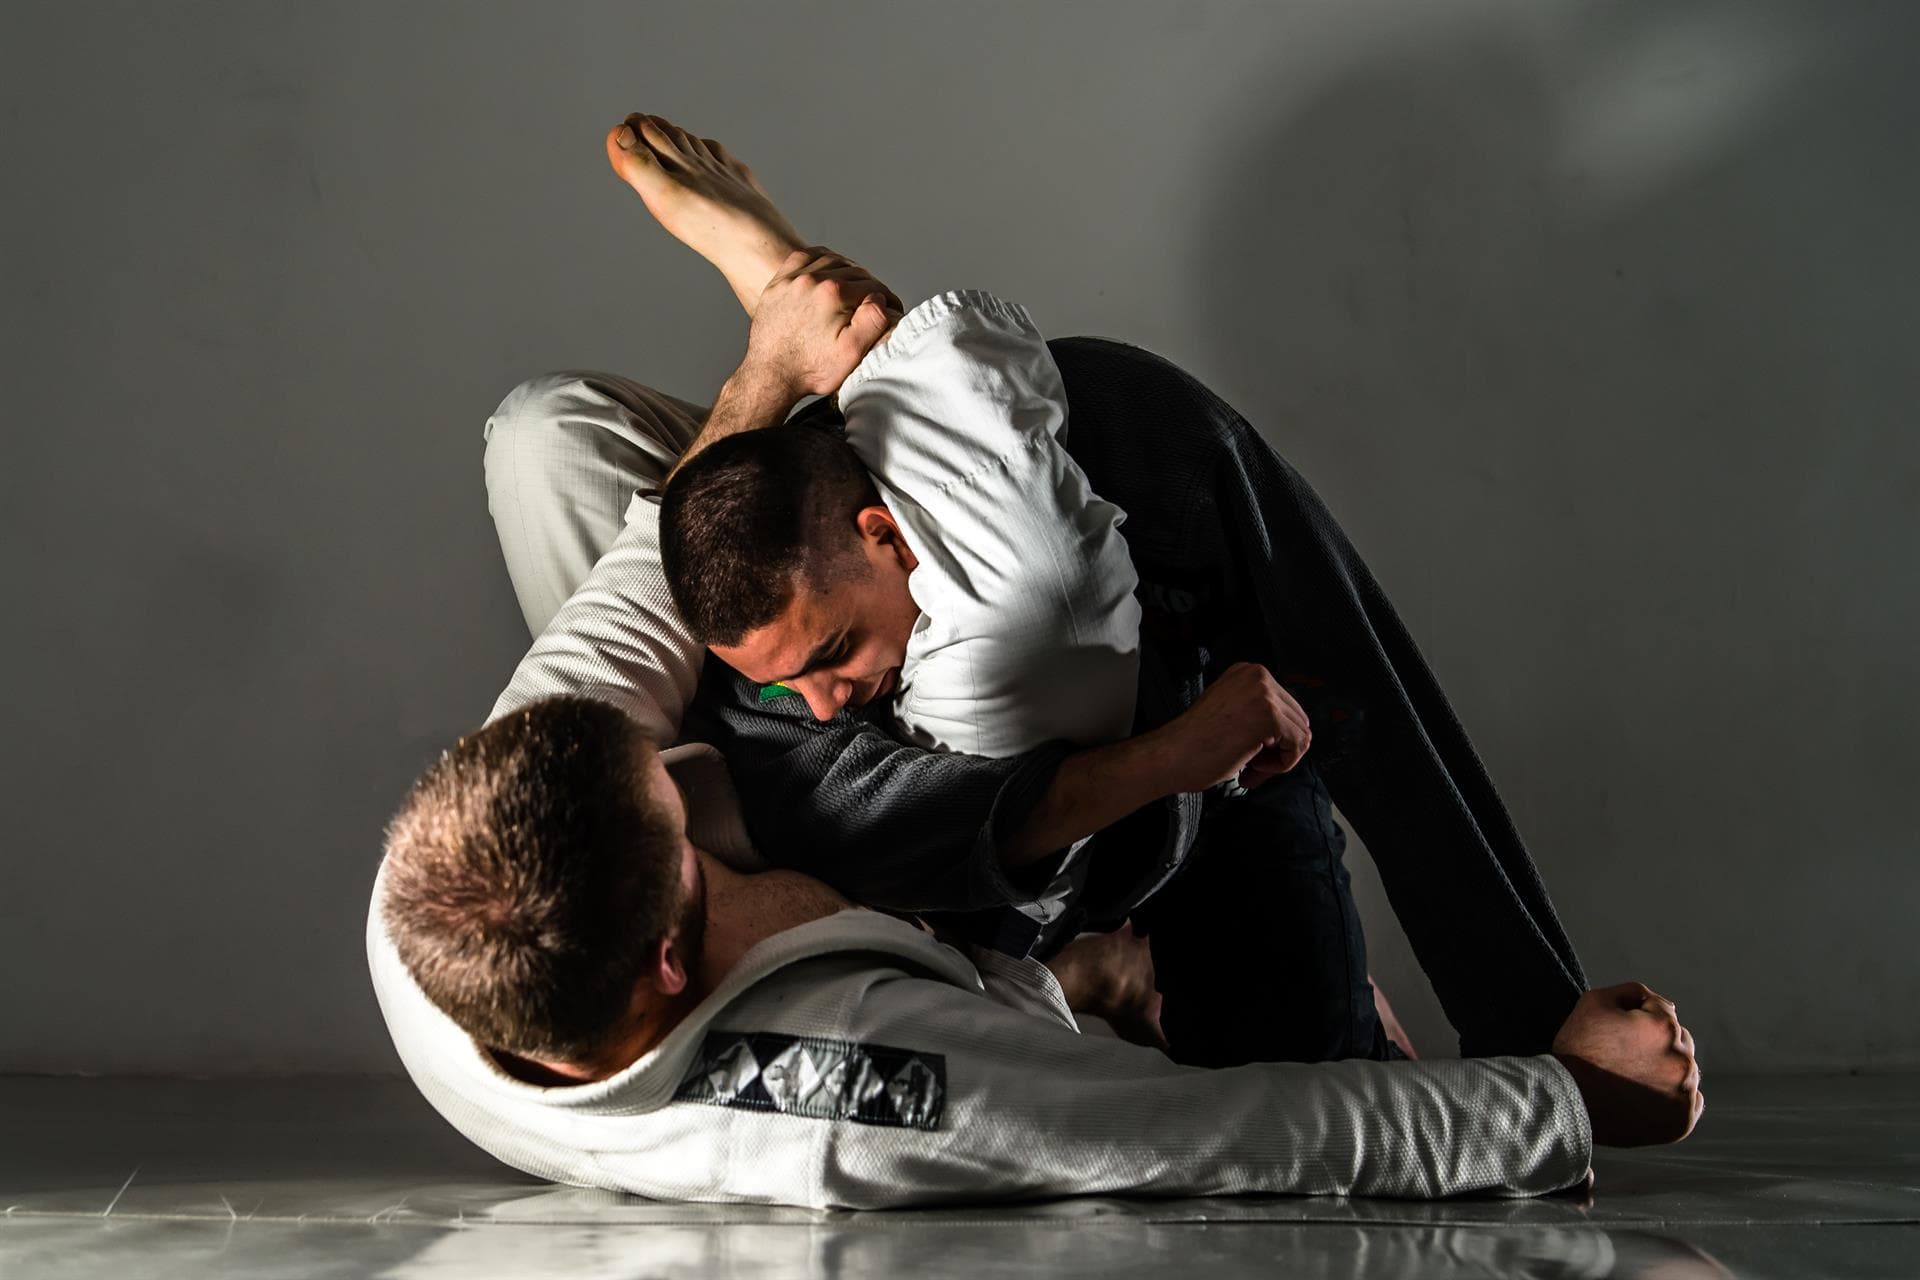 Ver clases de Jiu Jitsu en Ourense